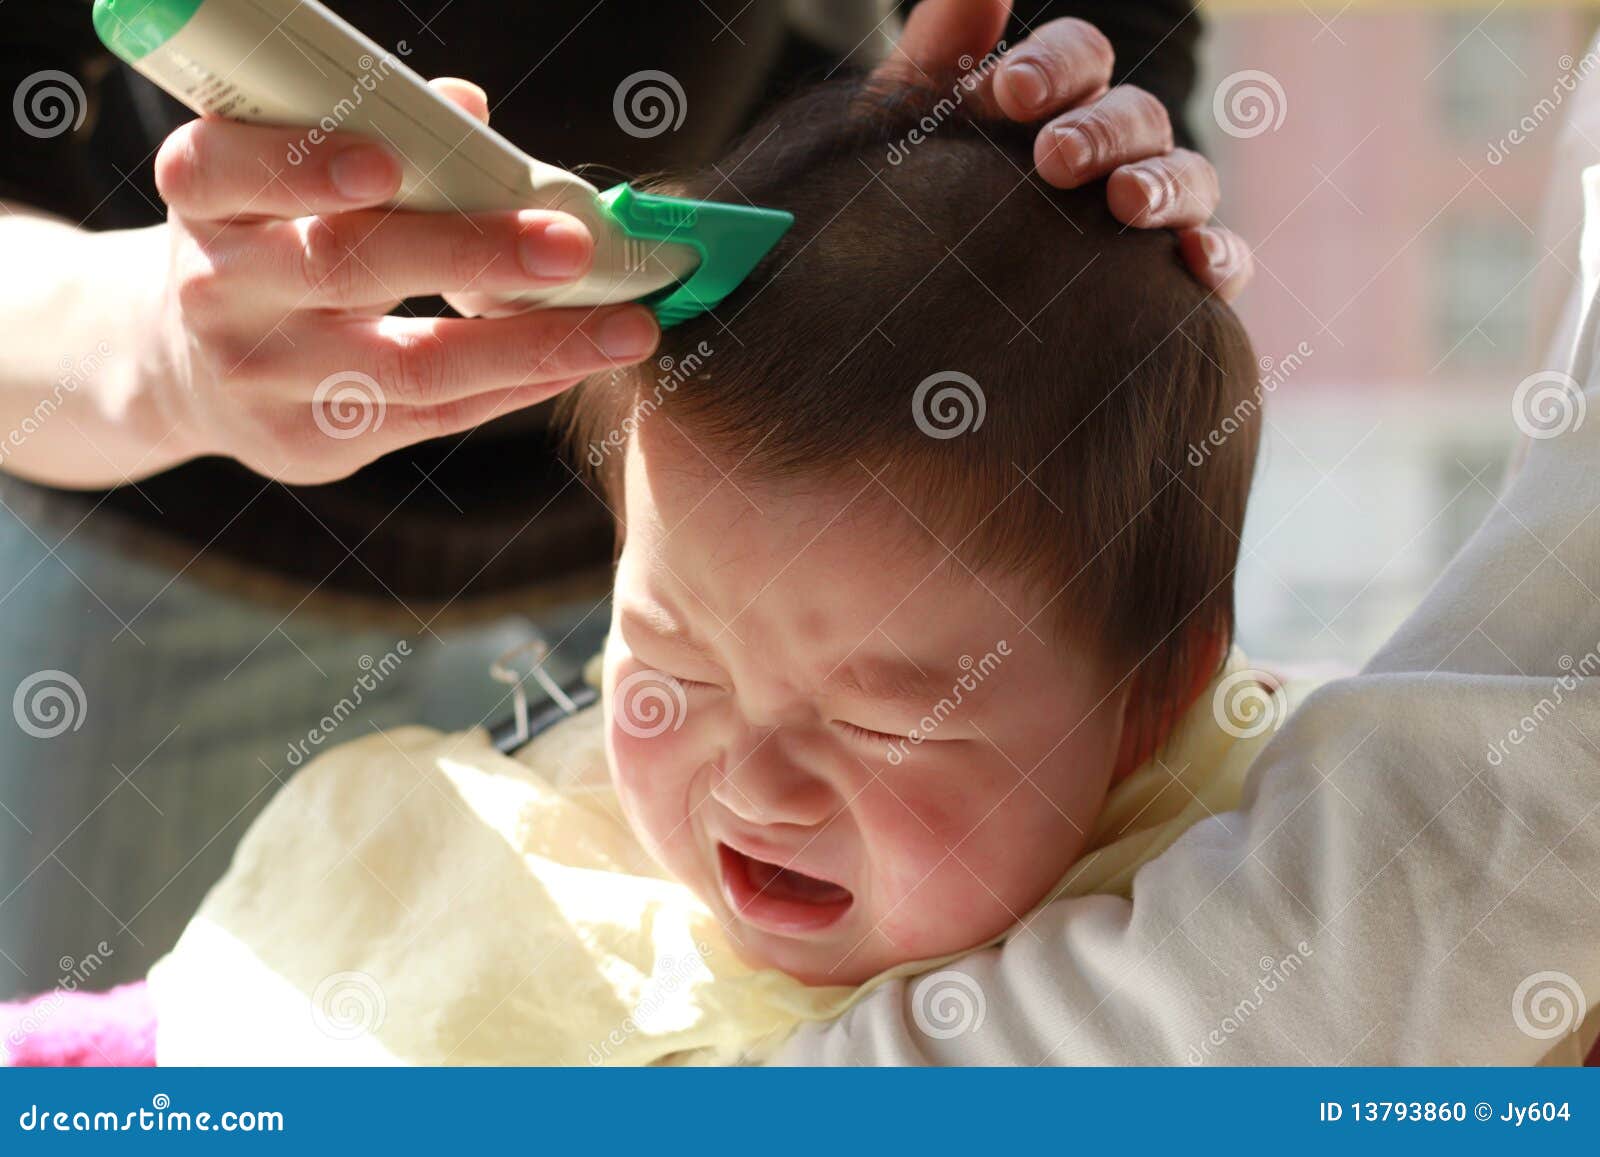 Как подстричь новорожденного. Стричь волосы младенцев. Первая стрижка ребенка в годик. Грудничок для стрижки волос. Стрижки для грудных детей.